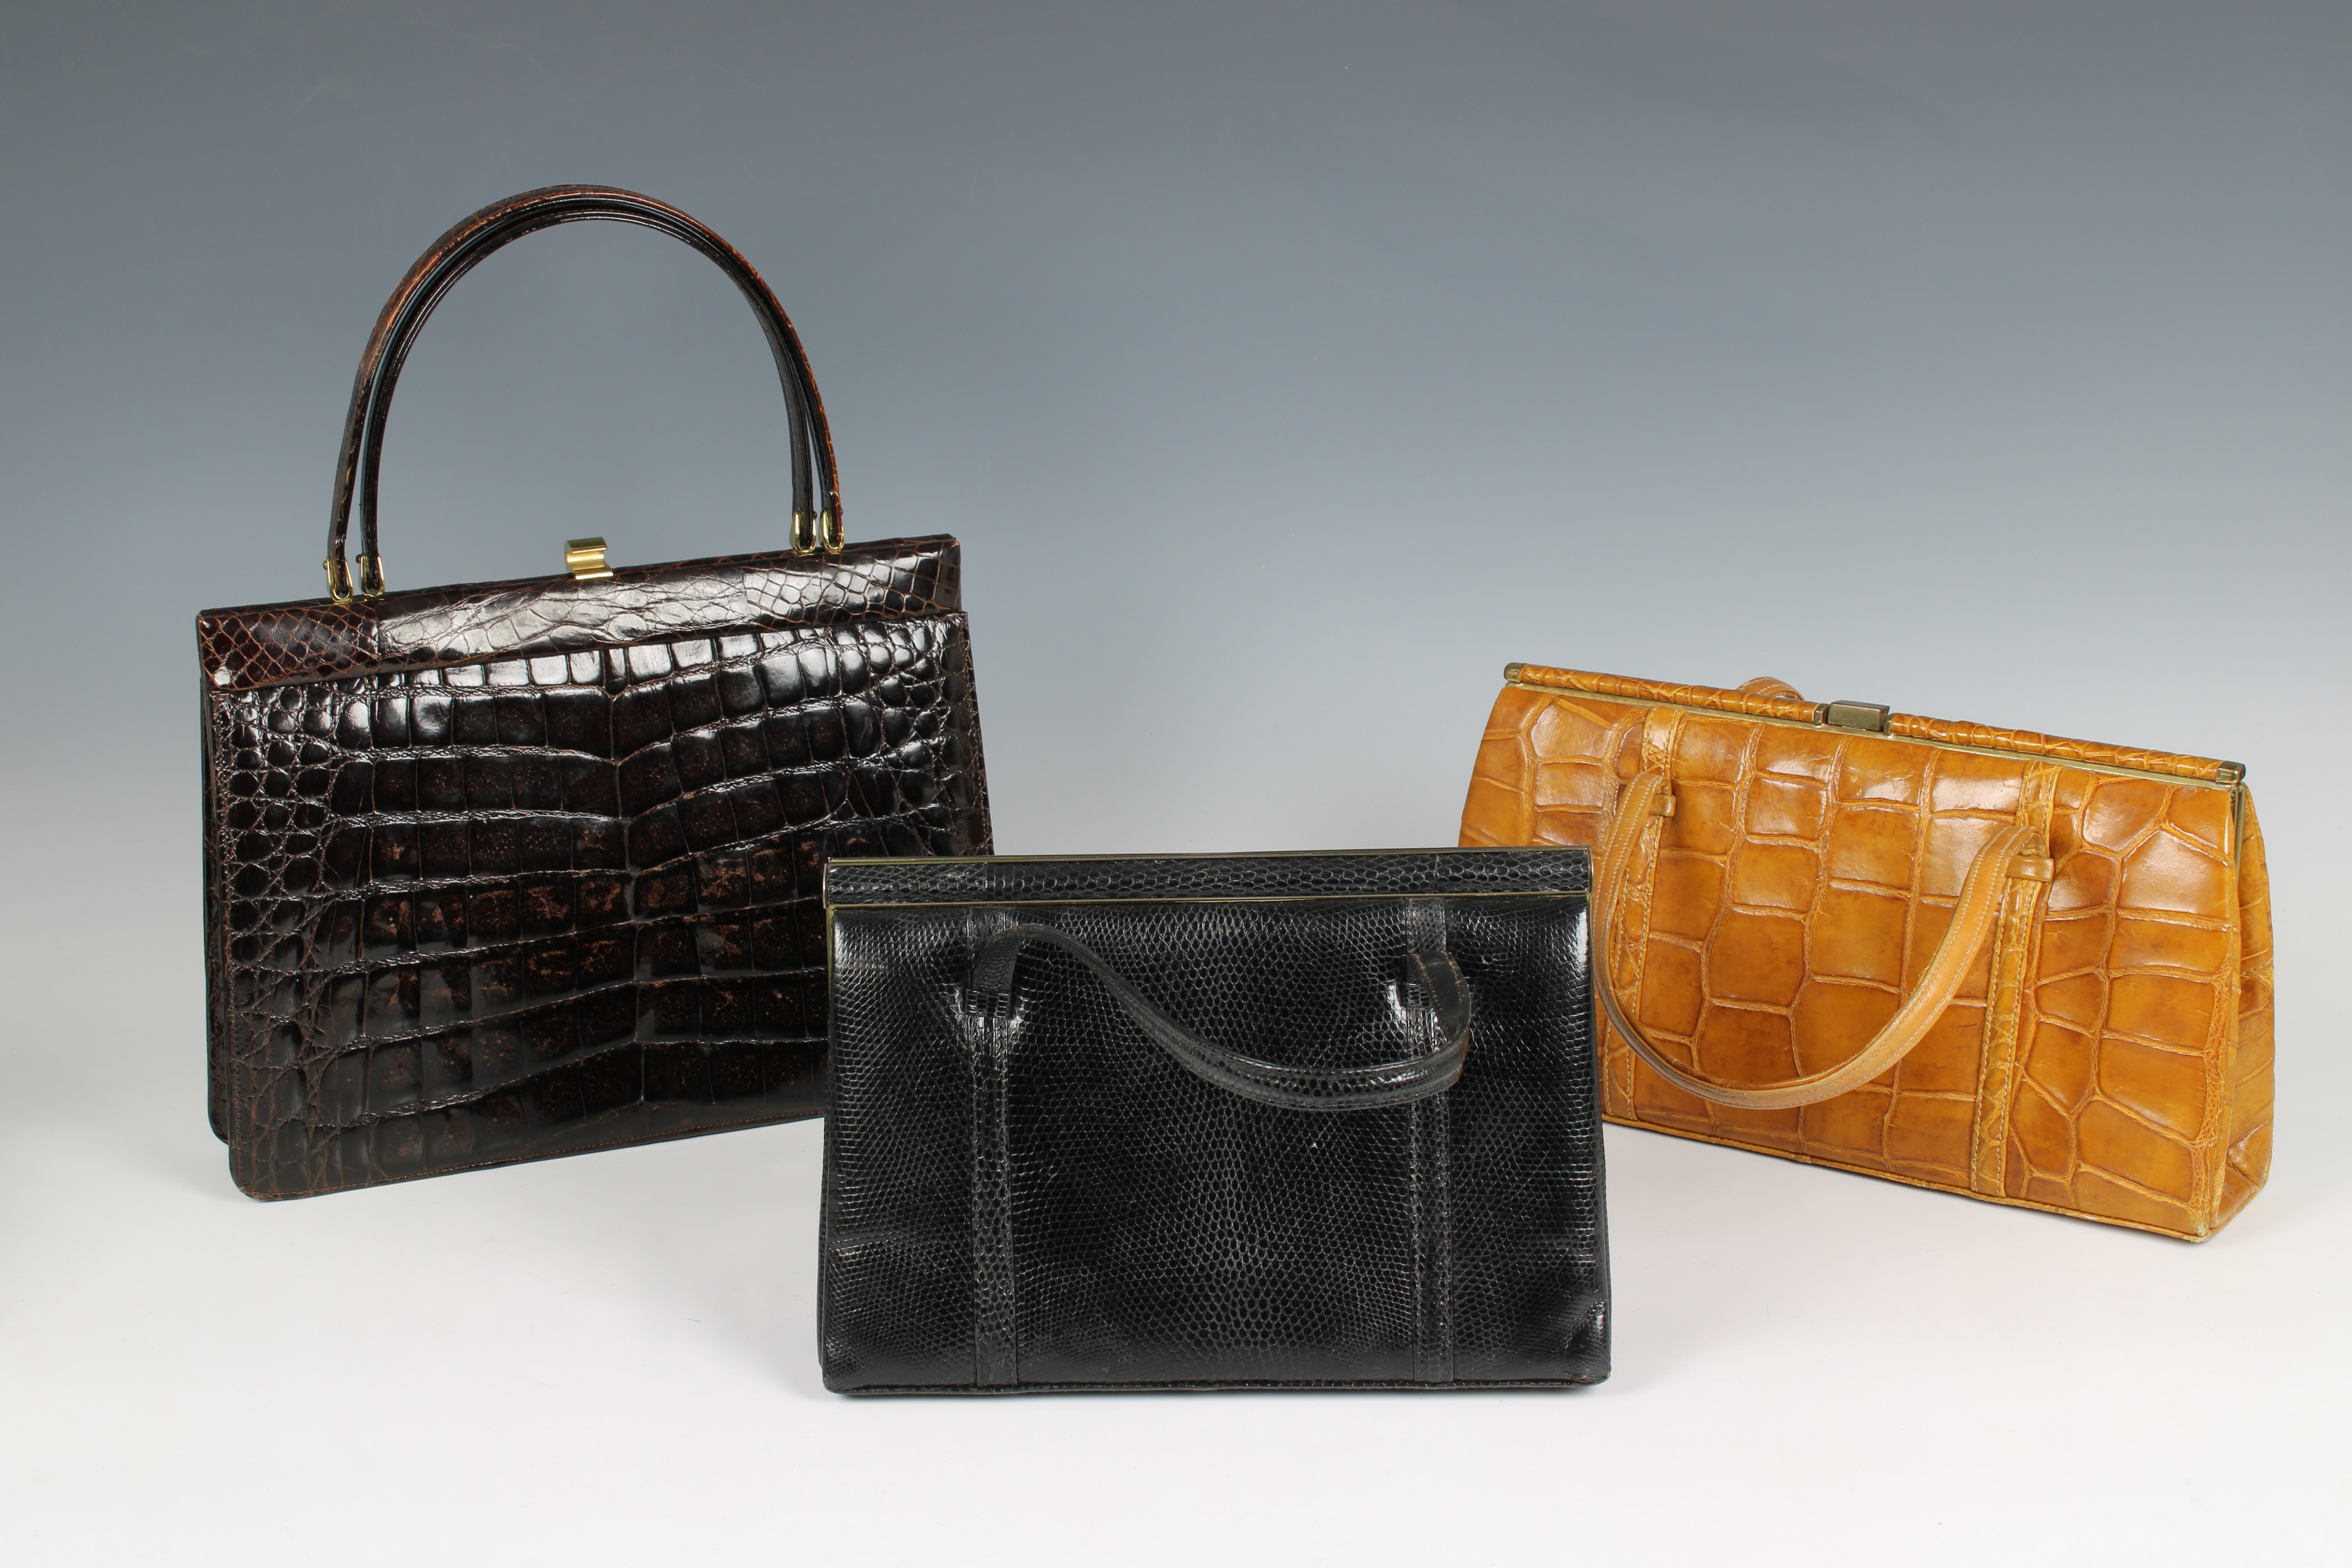 Two crocodile skin vintage handbags by Fassbender - Image 2 of 3